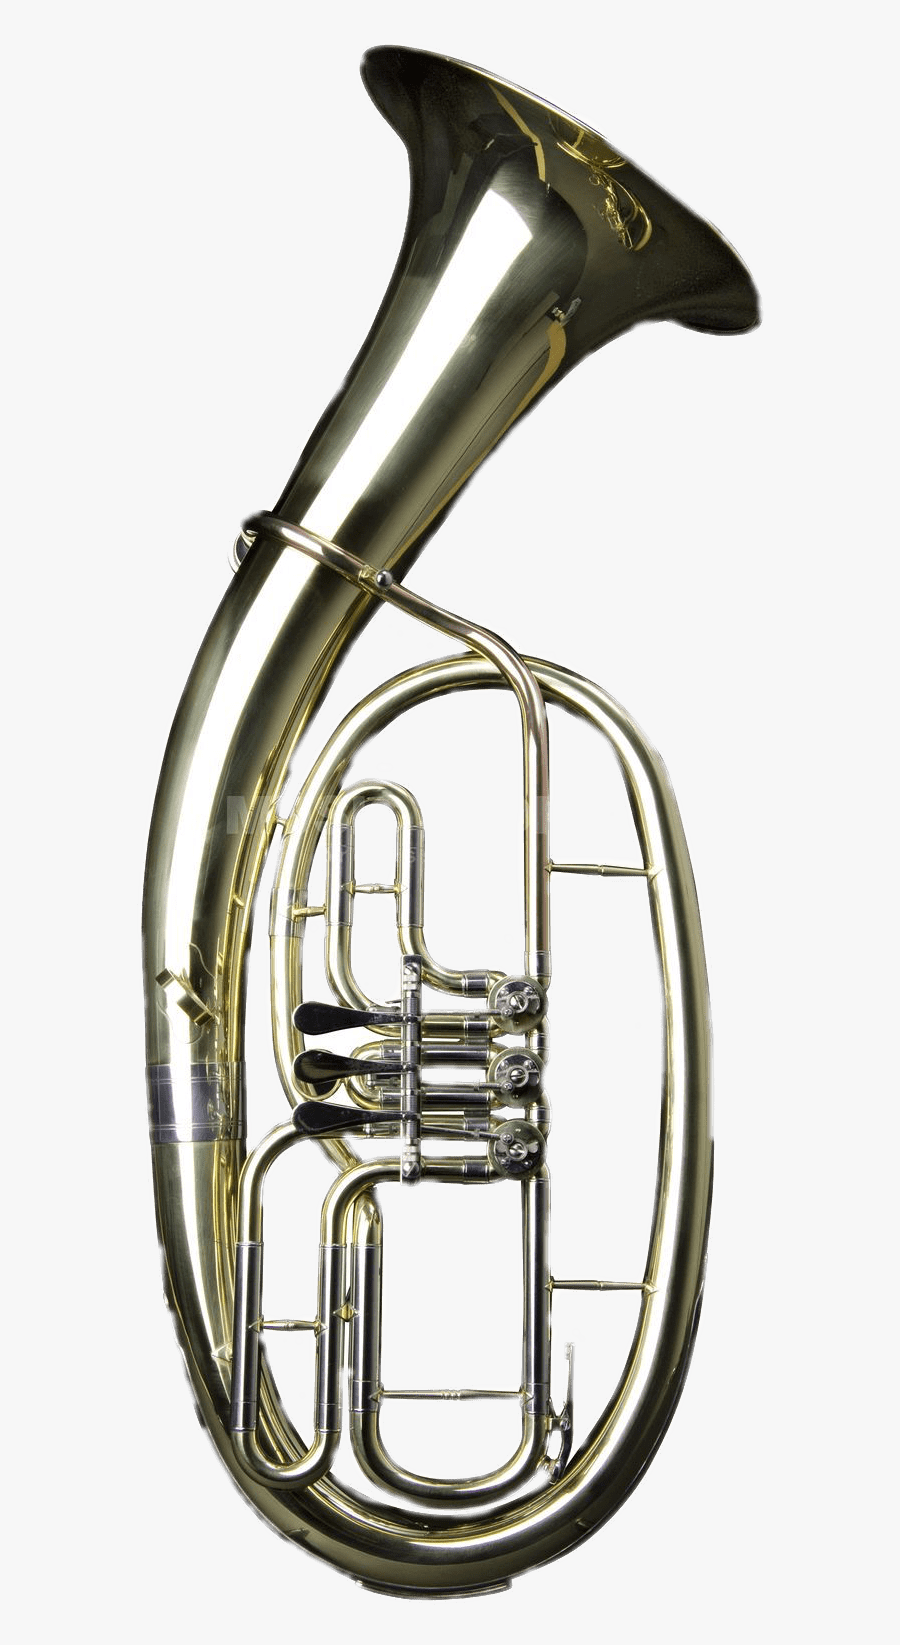 Brass Tenor Horn - Clipart Brass Instrument Drawing Tenor Horn, Transparent Clipart